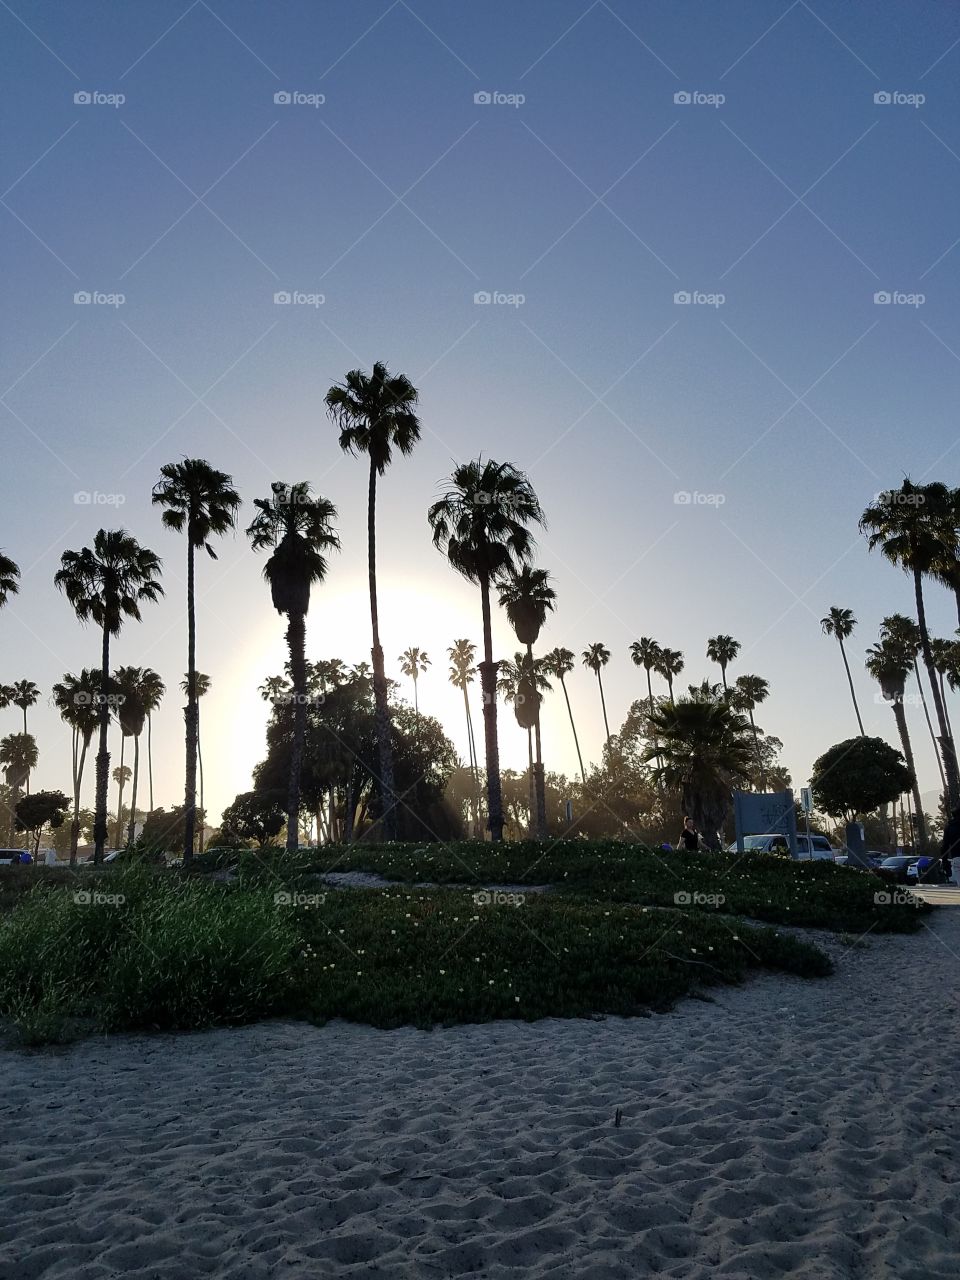 beach Palm trees